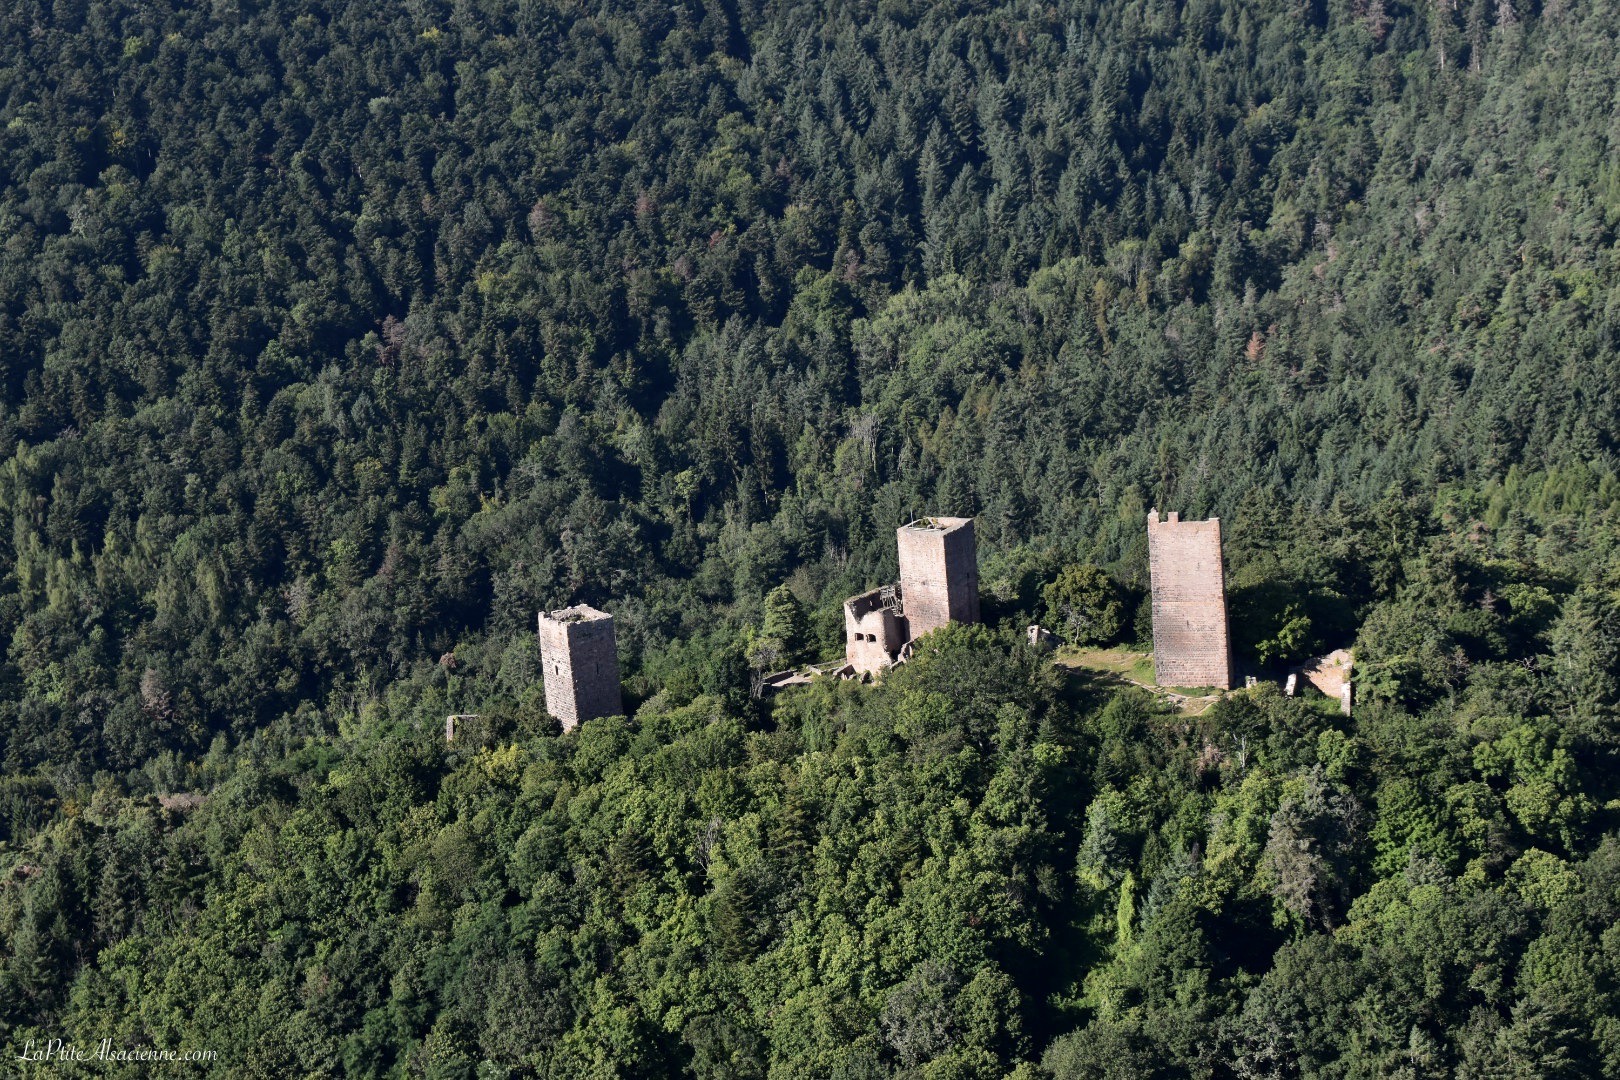 Les 3 châteaux d'Eguisheim vue du ciel en ULM - Photo by Cendrine Miesch pour l'article sur les châteaux forts en Alsace